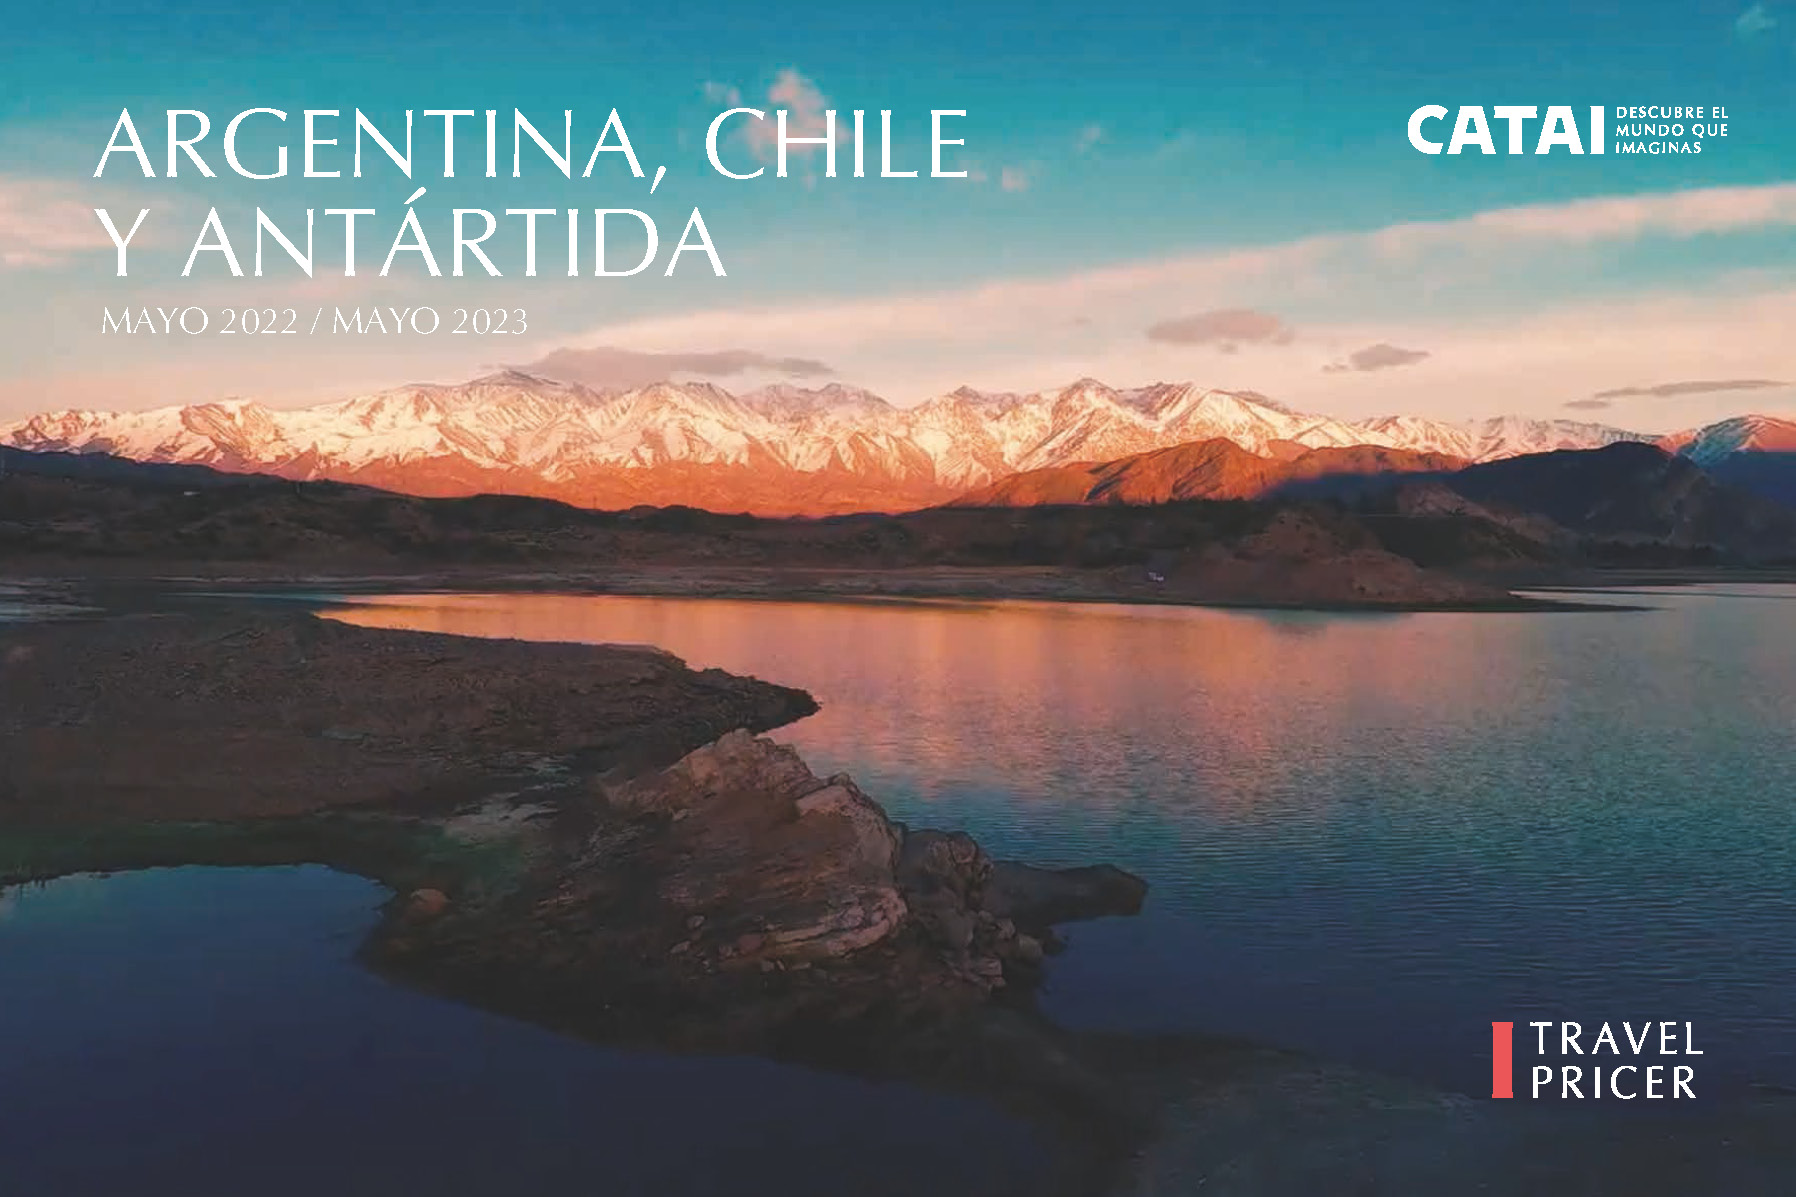 Catalogo Catai Argentina Chile y Antartida 2023